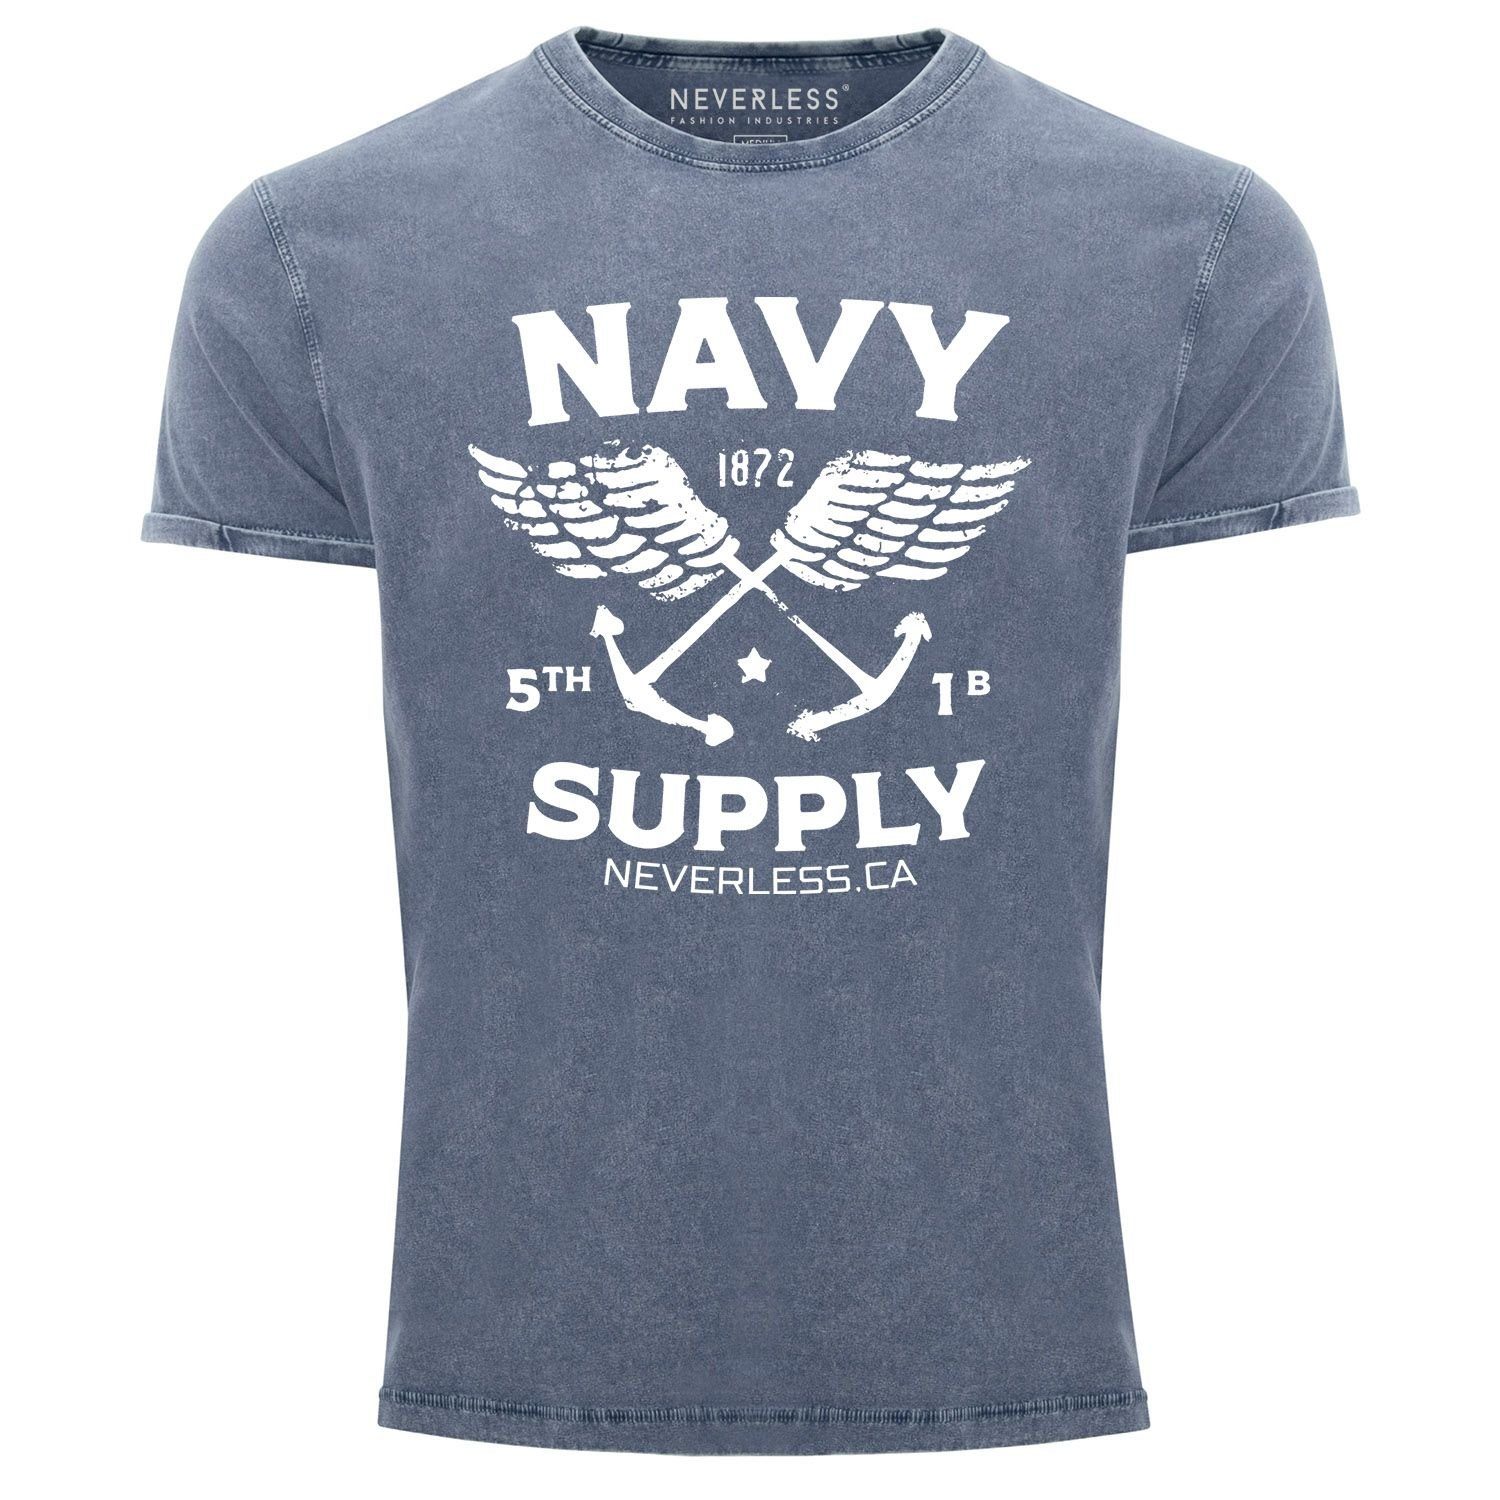 Neverless Print Shirt Fit blau Supply mit Vintage Used Printshirt T-Shirt Look Navy Print-Shirt Herren Neverless® Anker Slim